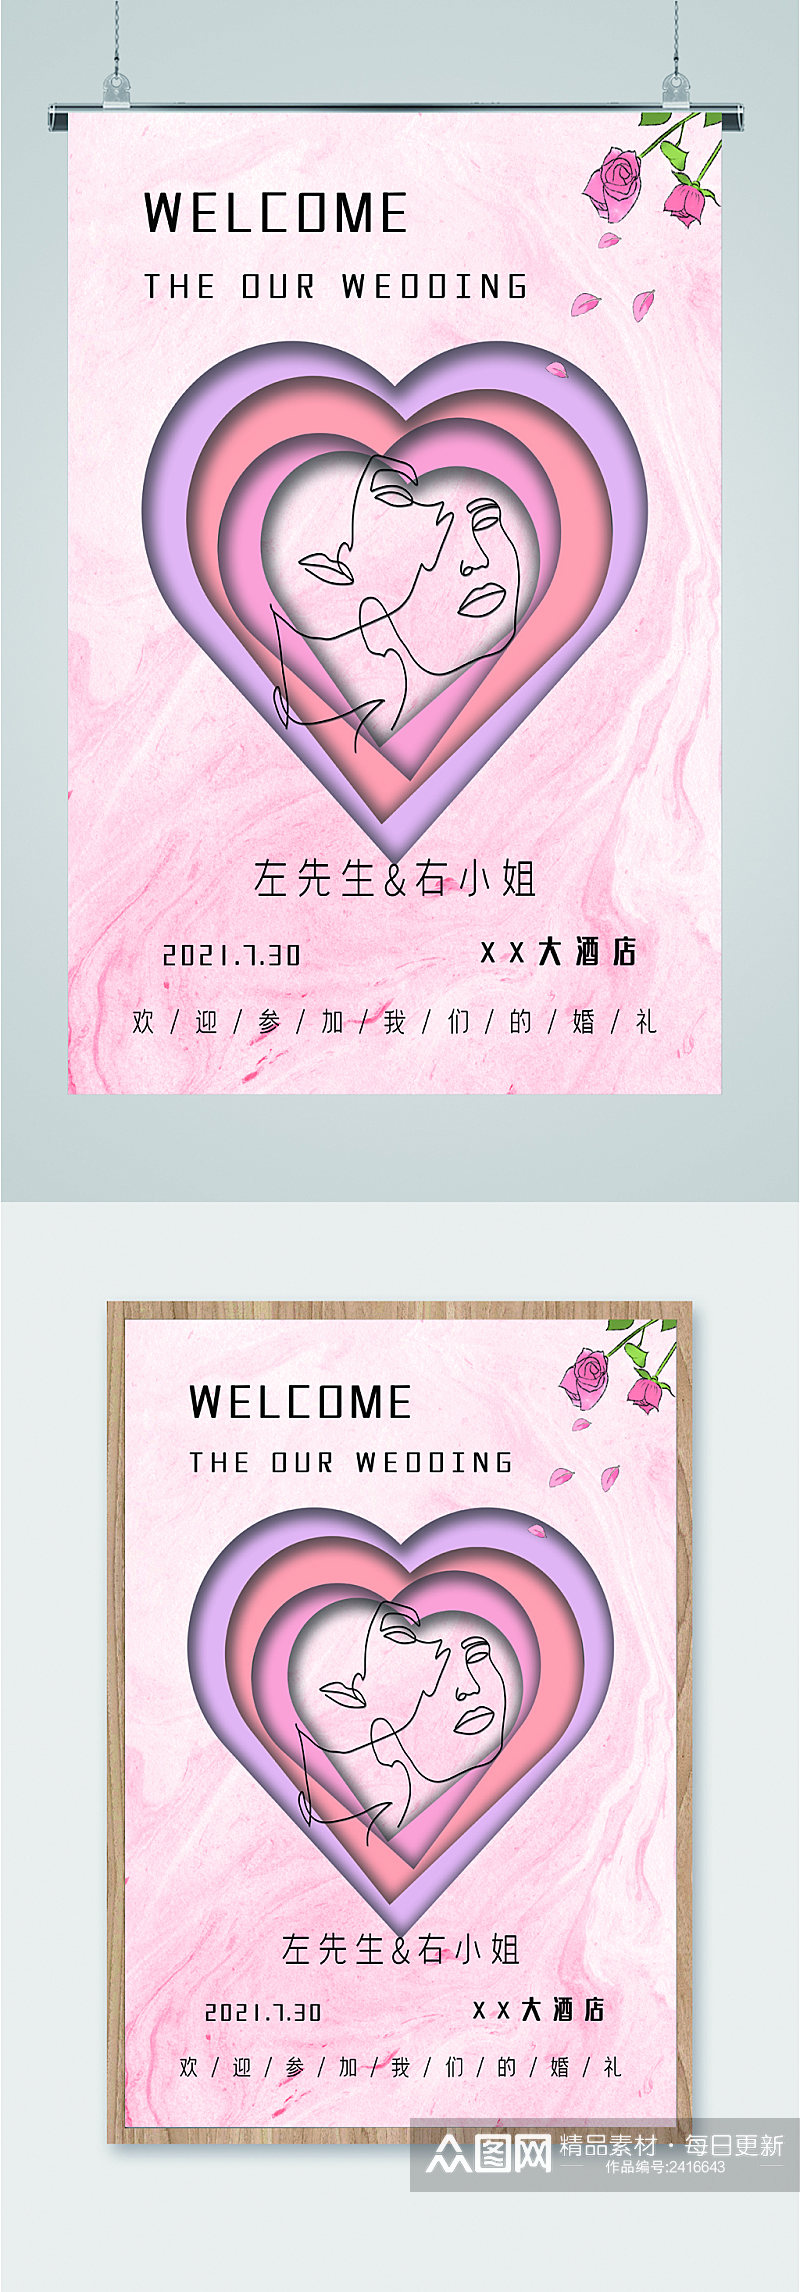 粉色系浪漫婚礼签到邀请海报素材